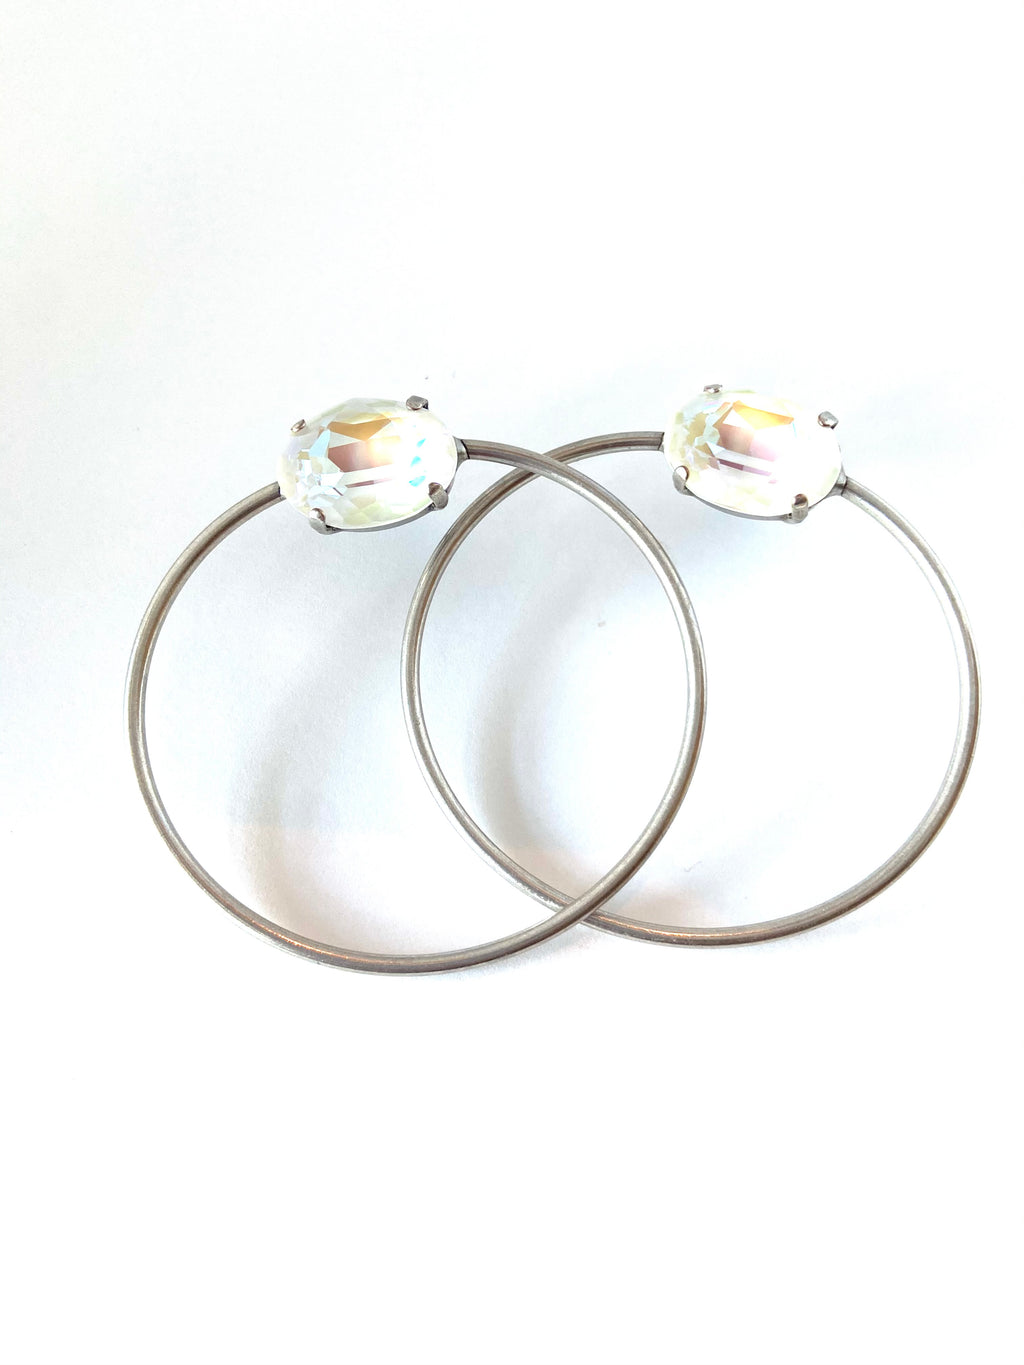 Oval Big Hoop Earrings set in Antique Silver